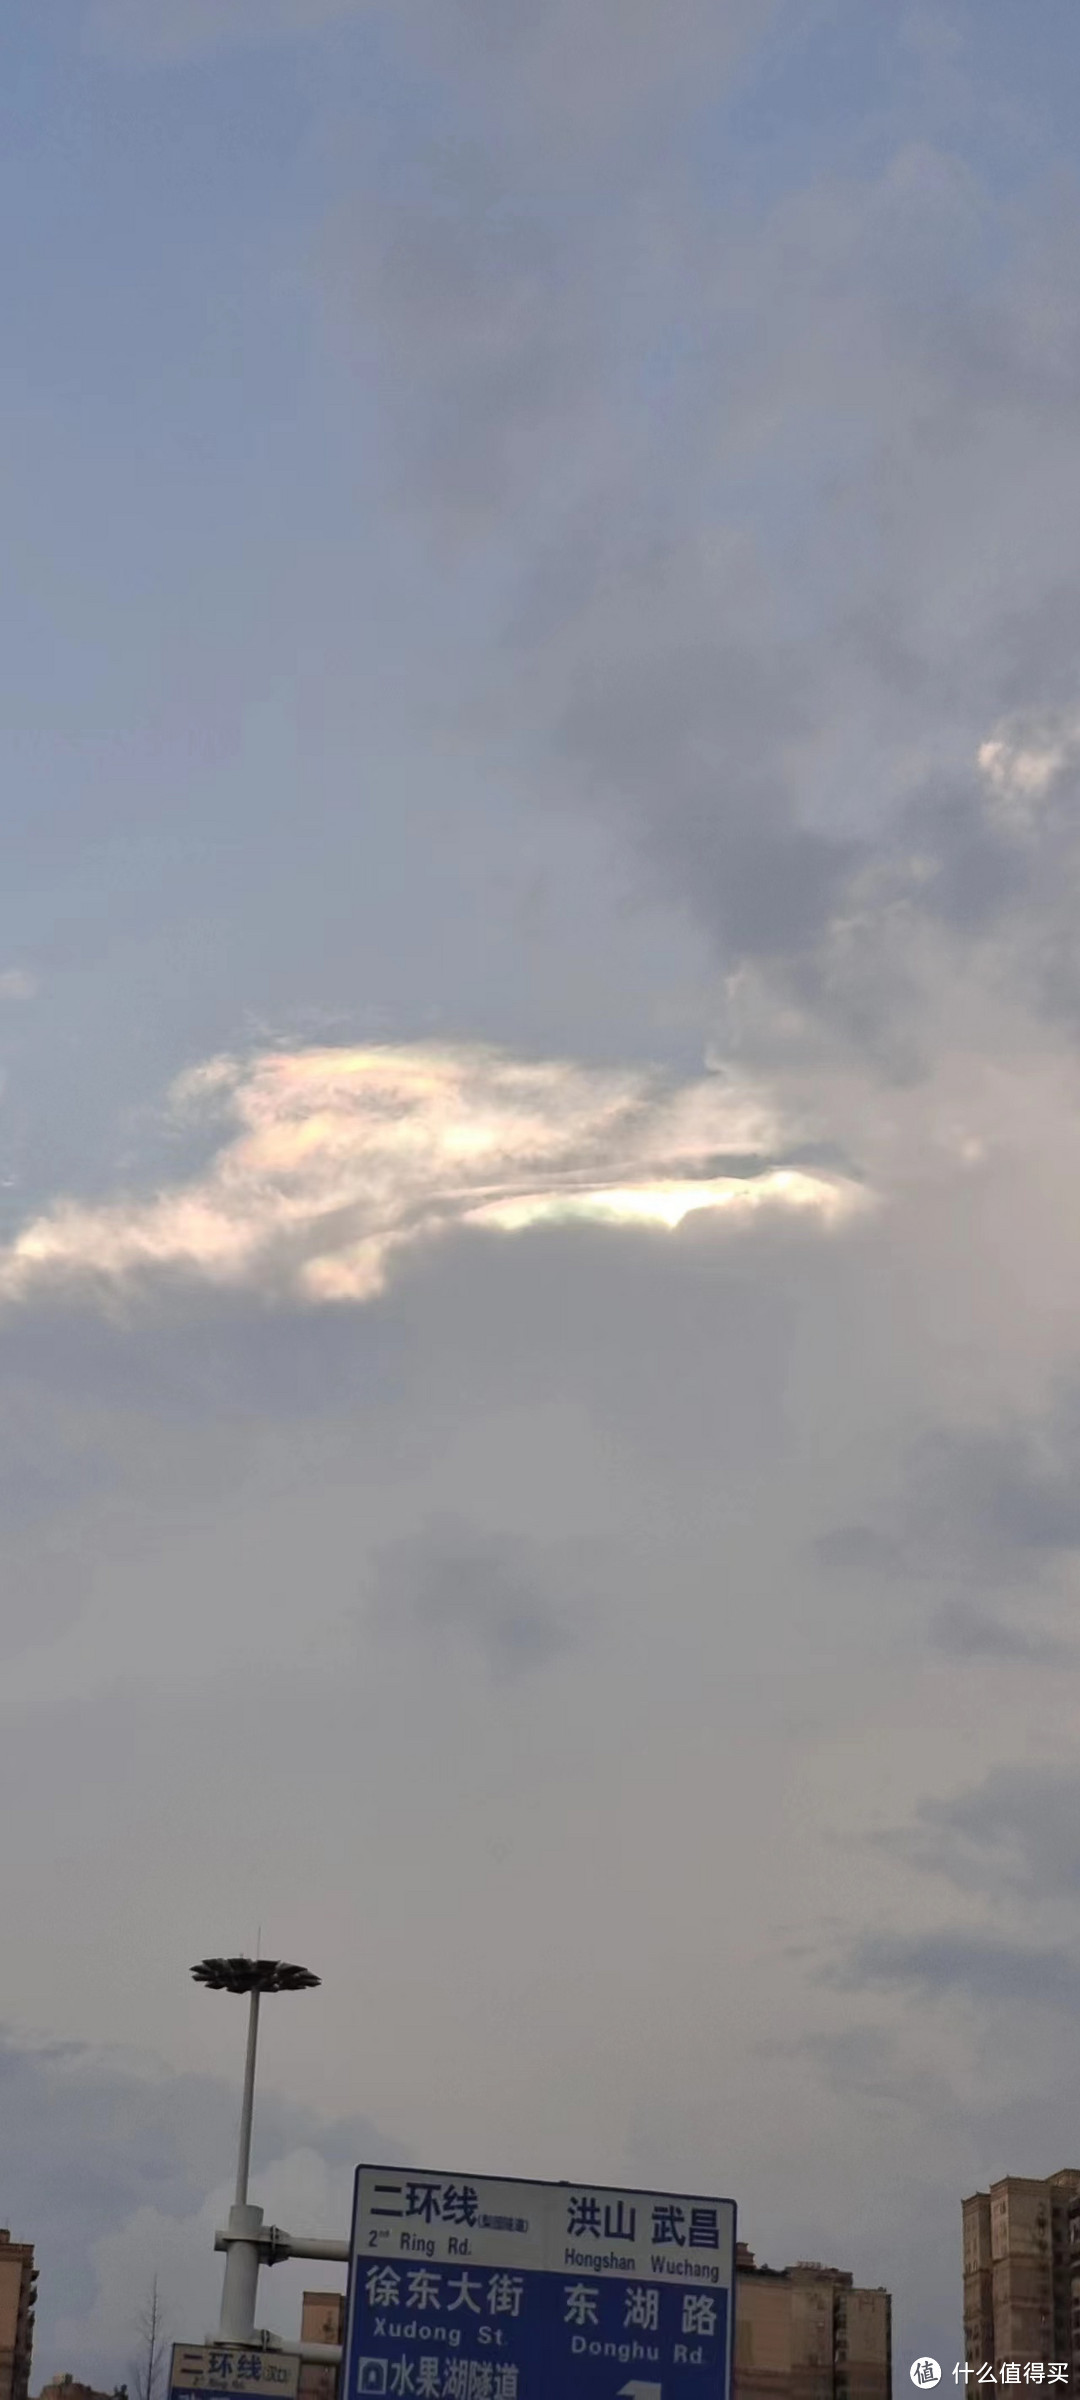 出隧道就看到天上有五彩云，抖音说看到这张照片的都会年入2000W